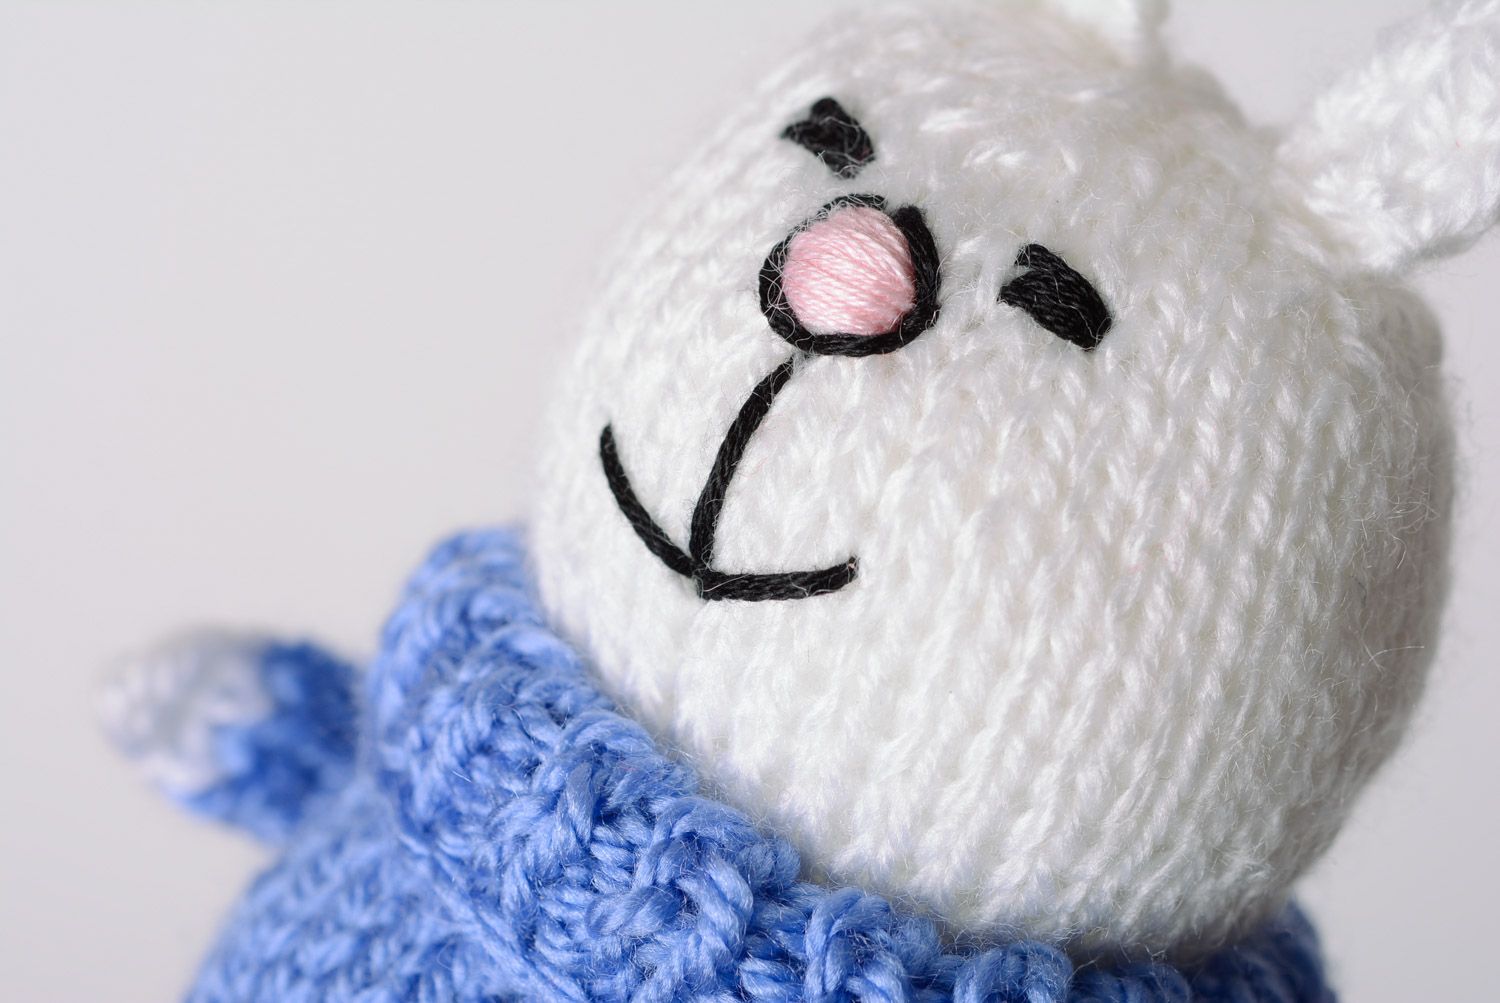 Juguete tejido con agujas liebre blanca en suéter azul sonriente artesanal  foto 2